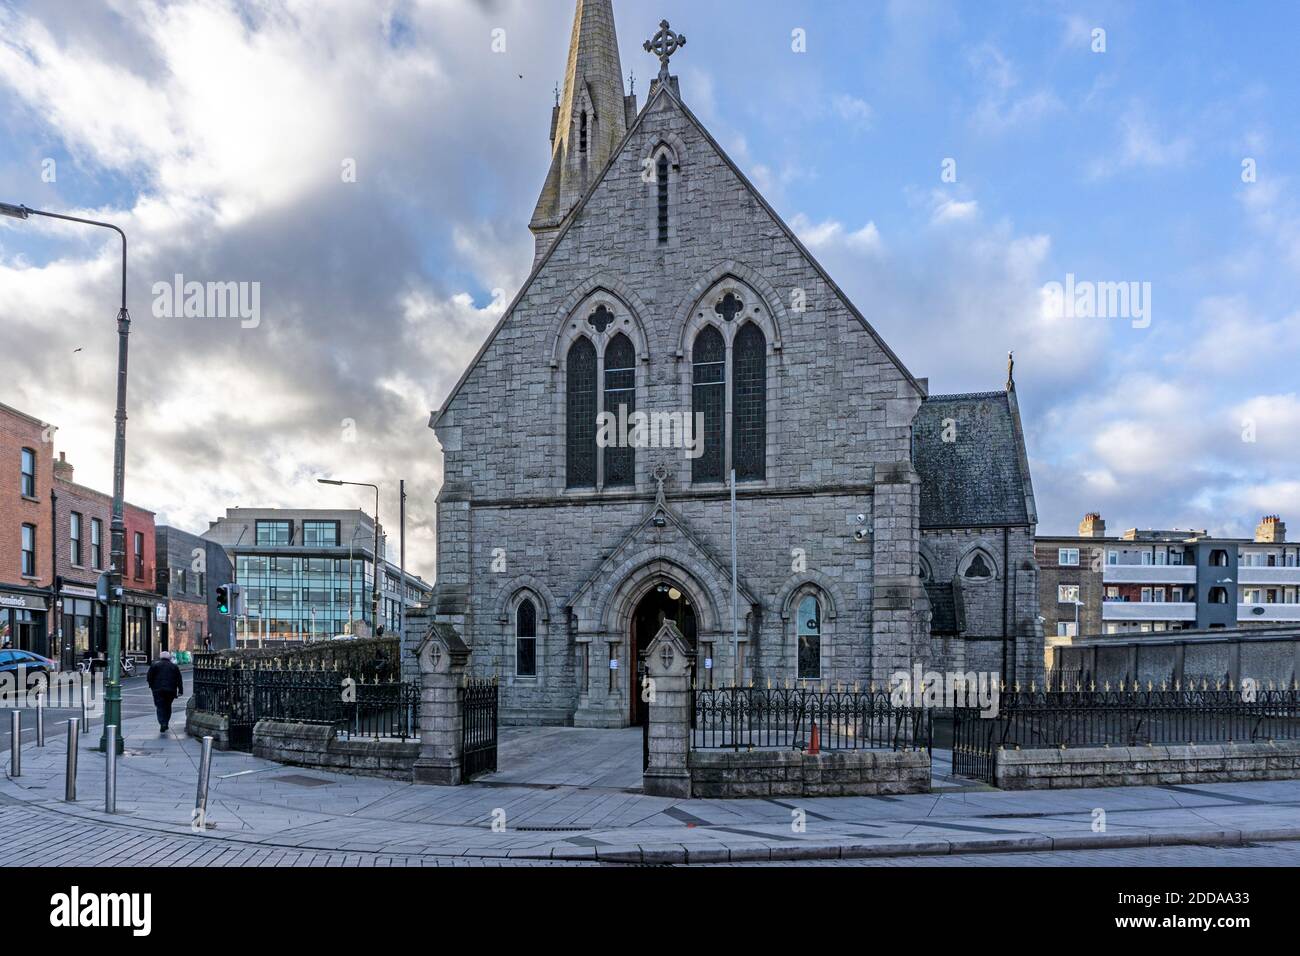 Ringsend, Eglise catholique romaine St Patricks, à Ringsend, Dublin, Irlande. Il a été ouvert en 1859 par l'archevêque Cullen. Banque D'Images